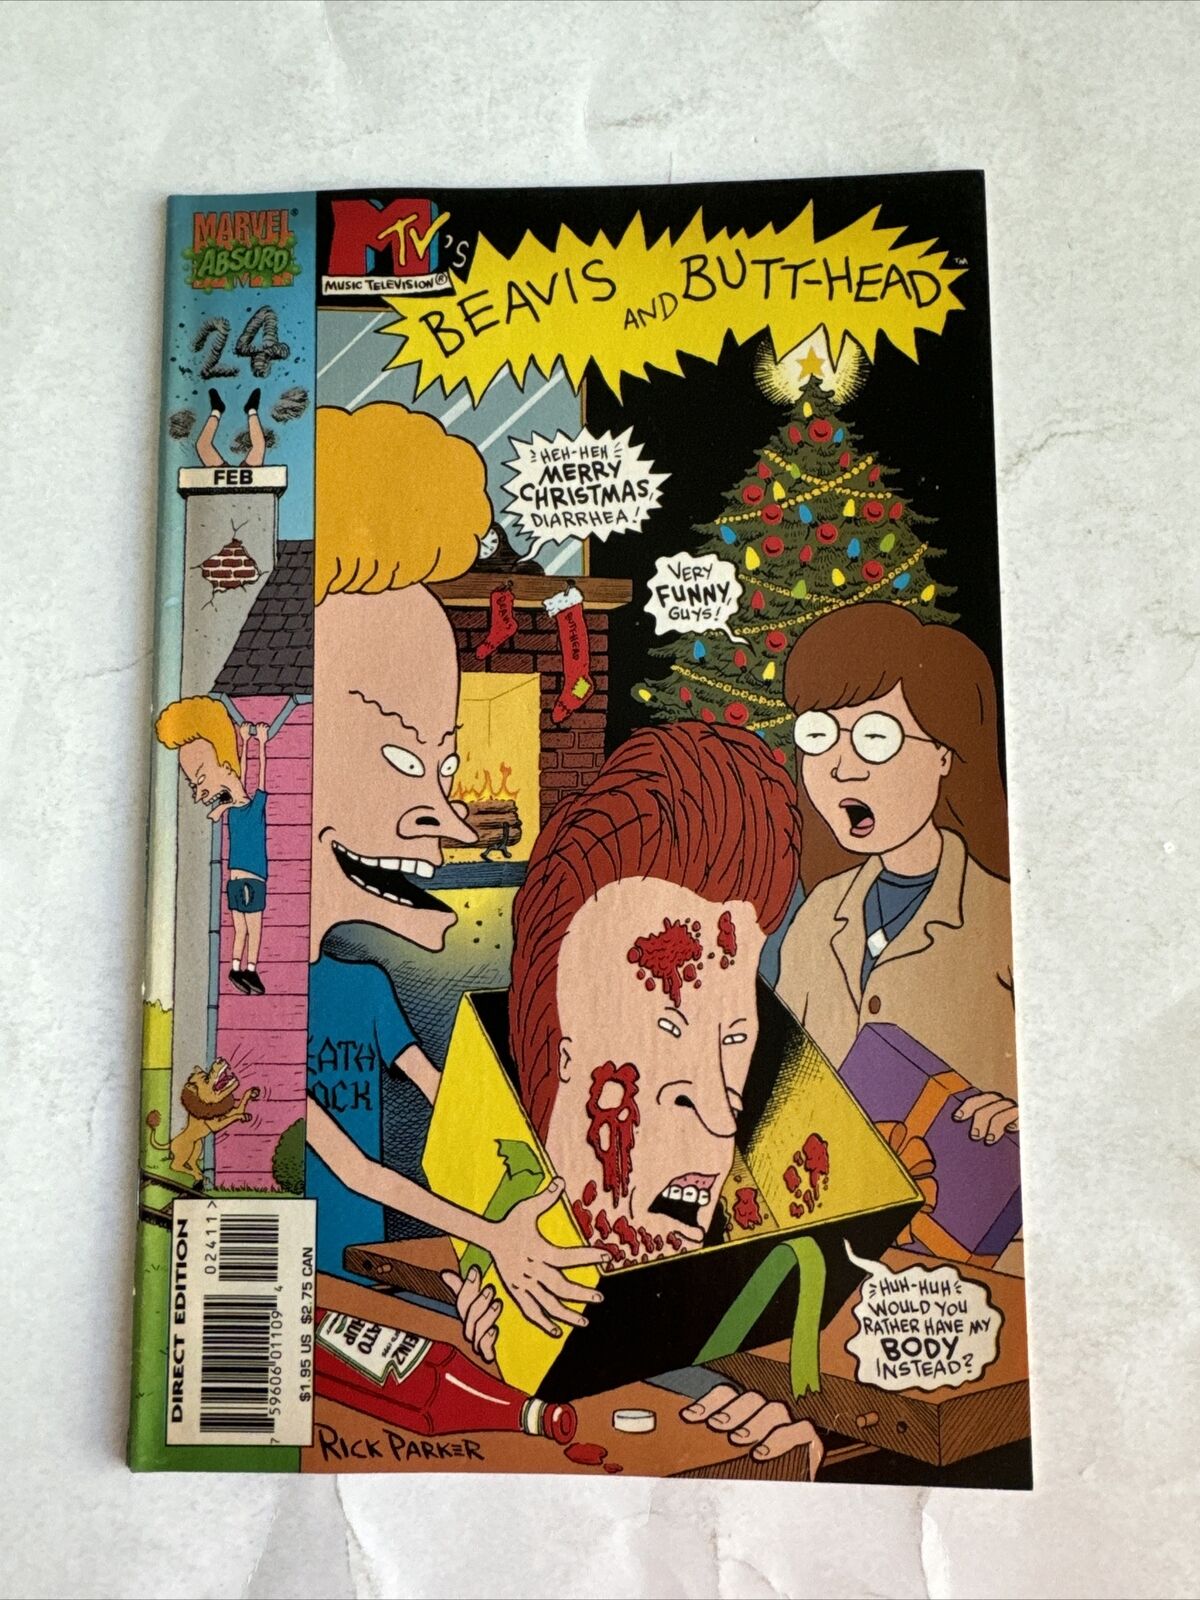 BEAVIS & BUTT-HEAD (1994) #24 Comics Book Marvel Absurd